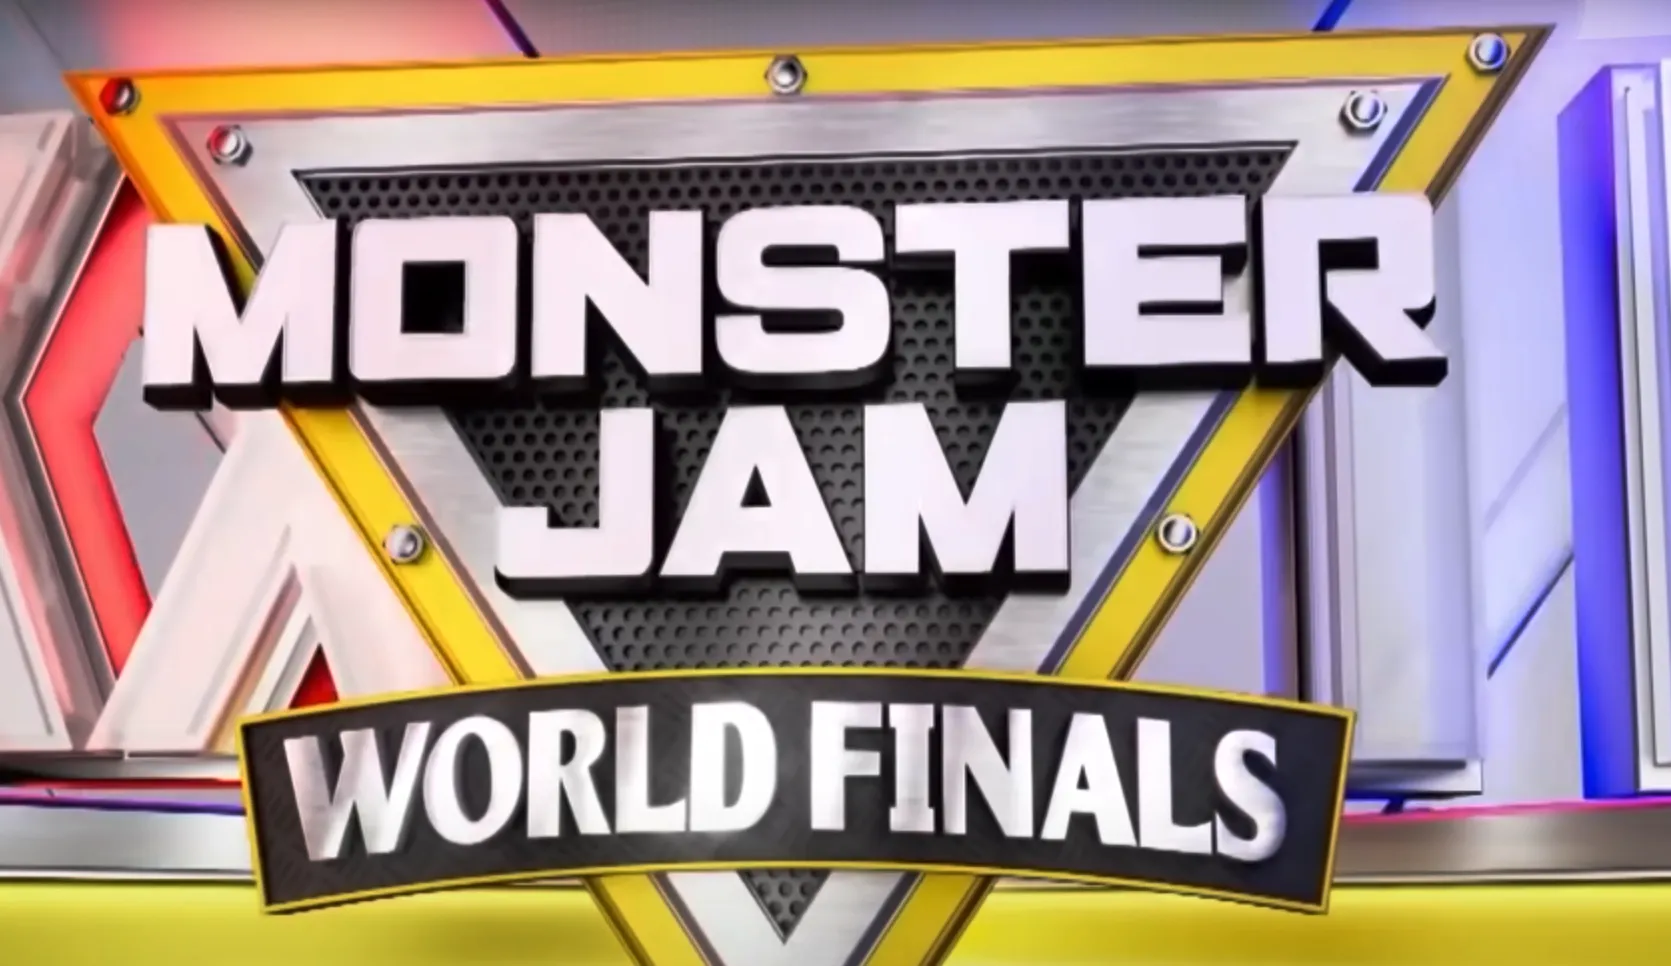 Monster jam world final logo